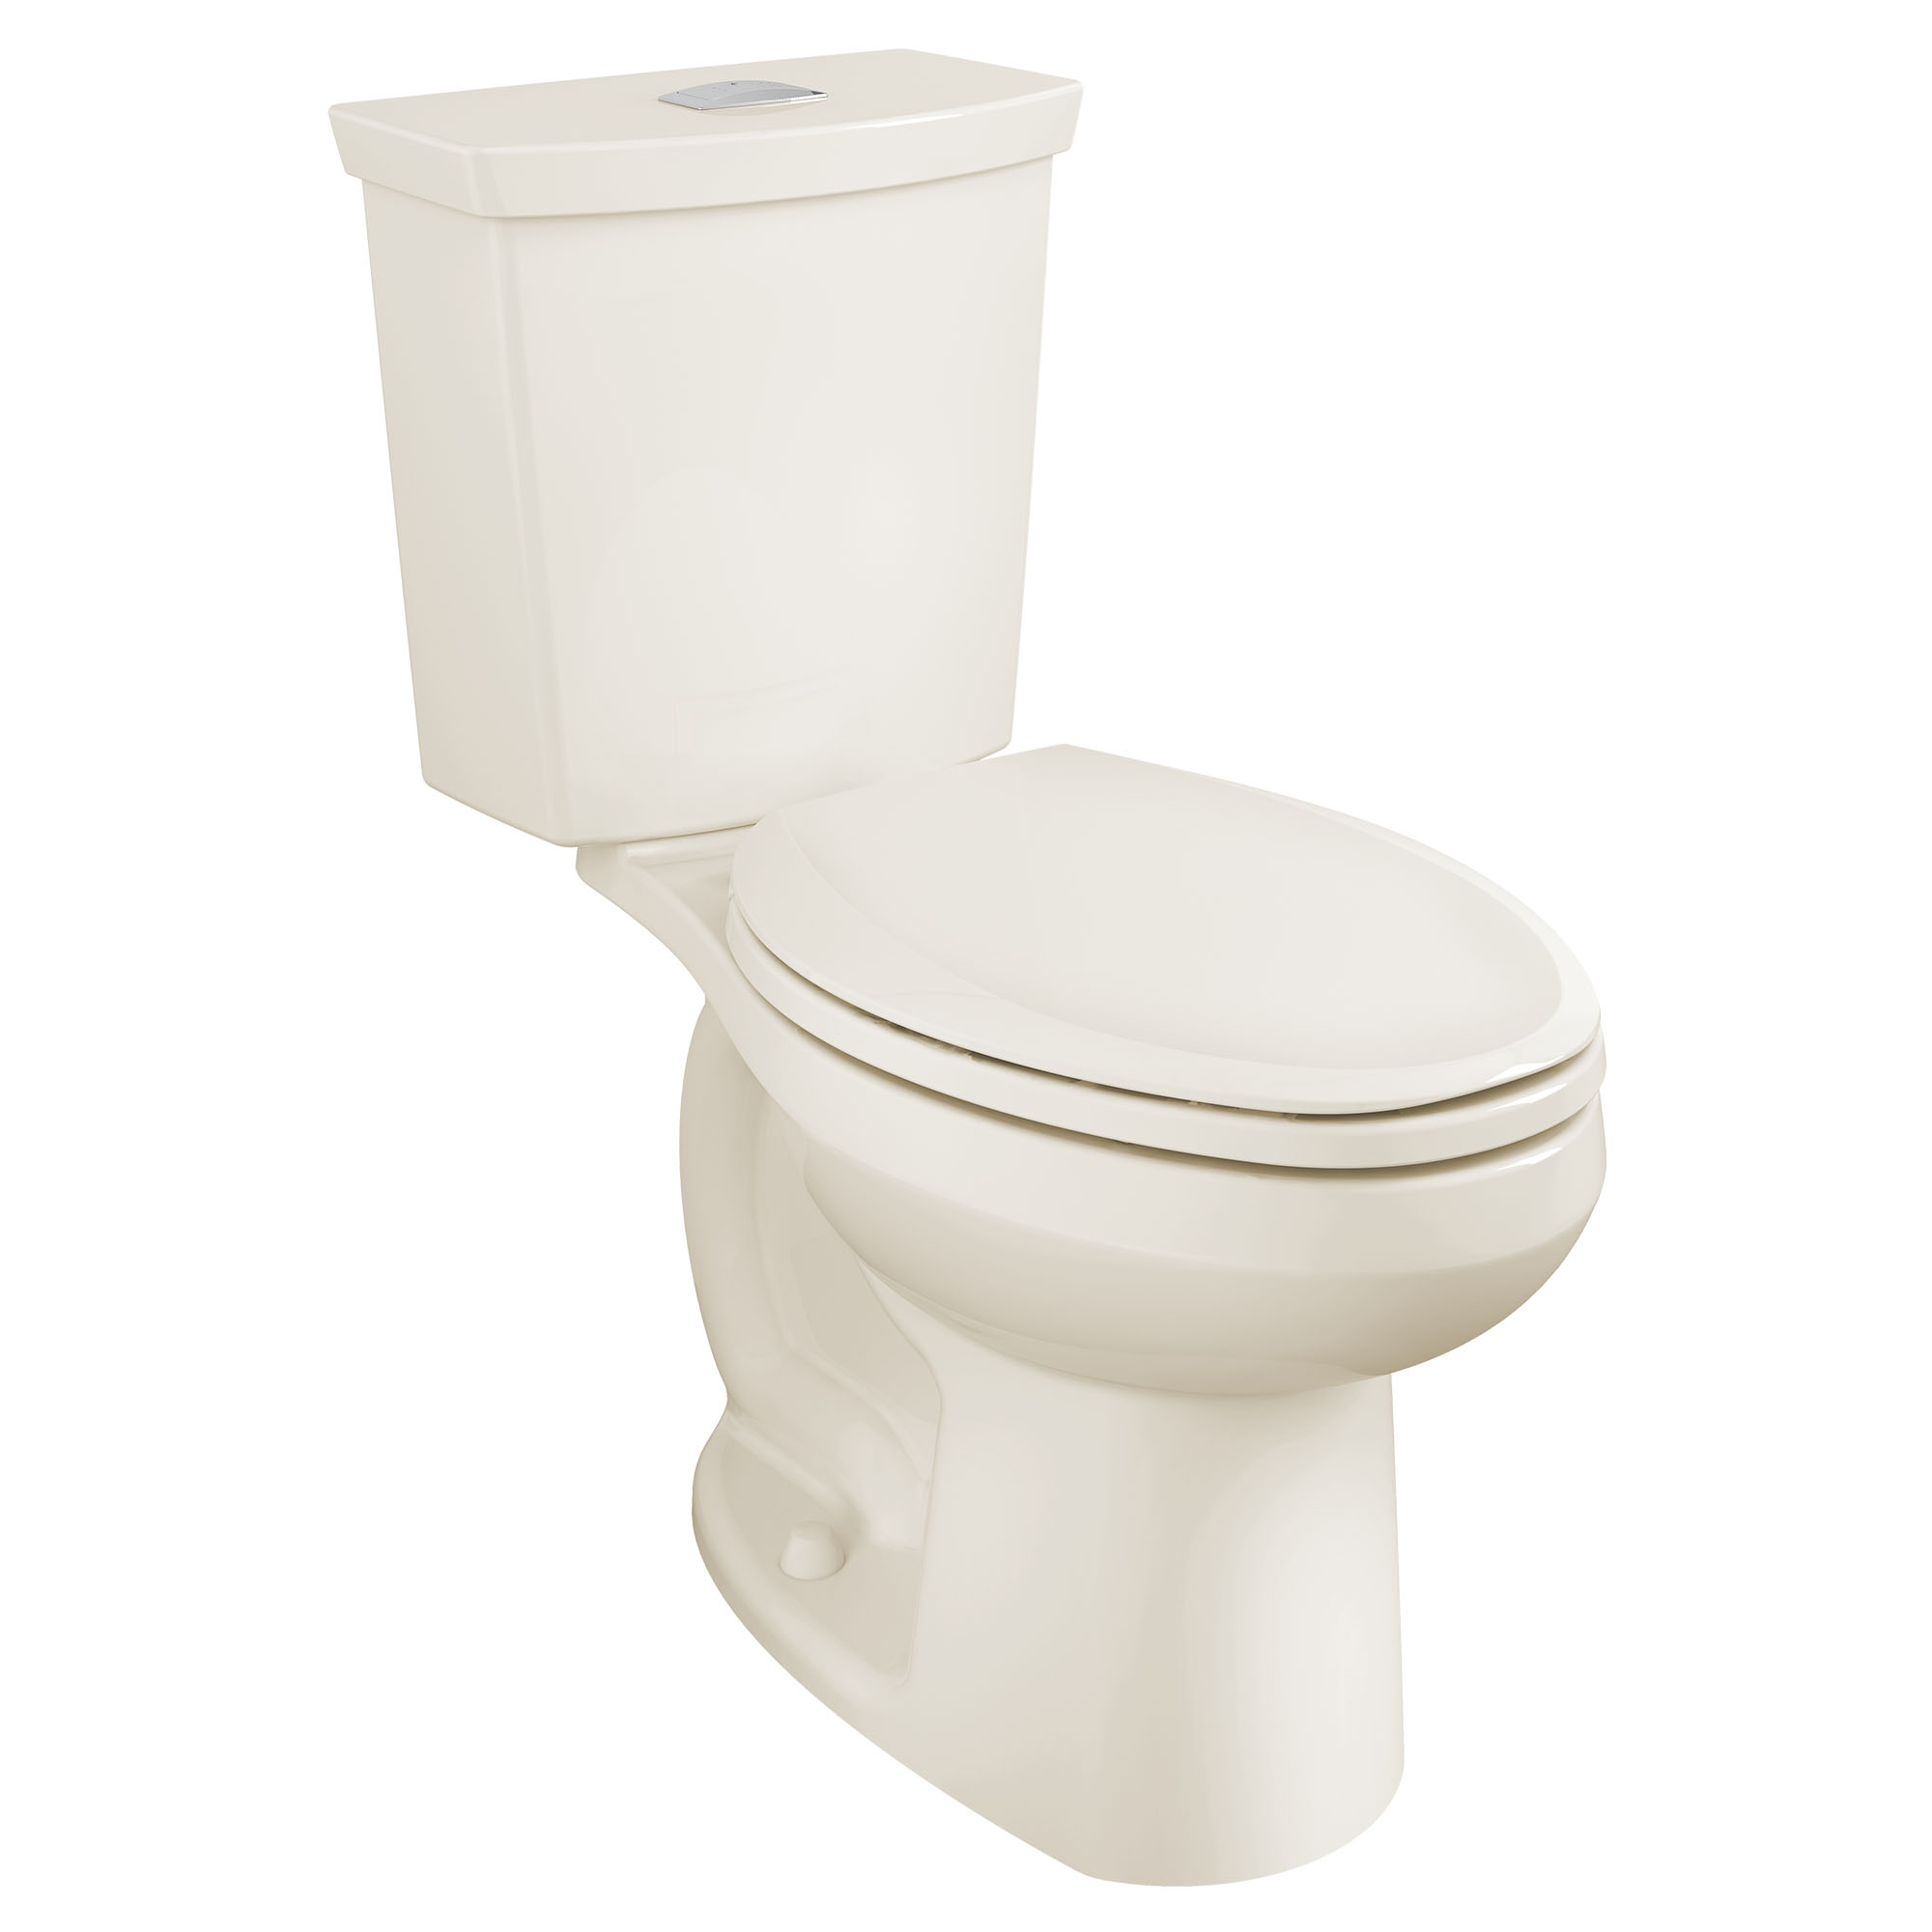 Toilette H2Option, 2 pièces, chasse double 1,28 gpc/4,8 lpc et 0,92 gpc/3,5 lpc, à cuvette allongée à hauteur de chaise et réservoir avec doublure, sans siège